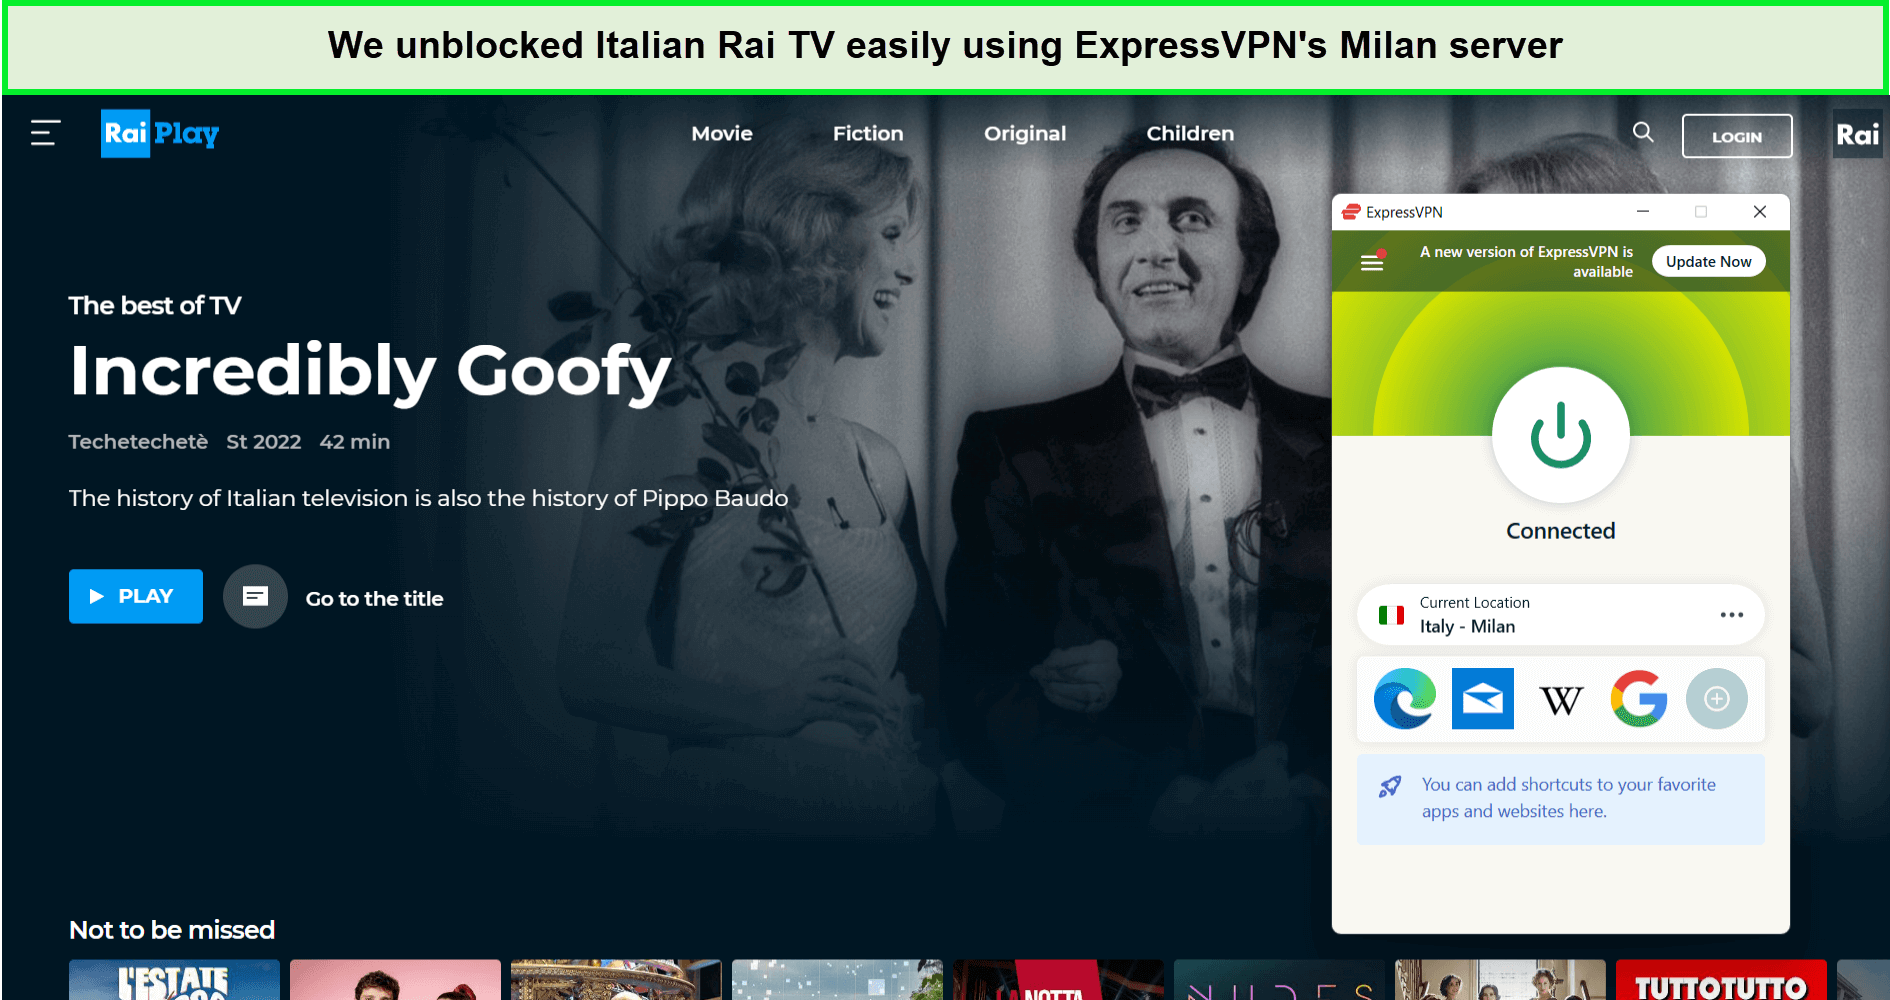  ExpressVPN desbloqueado Italia Rai TV in - Espana 